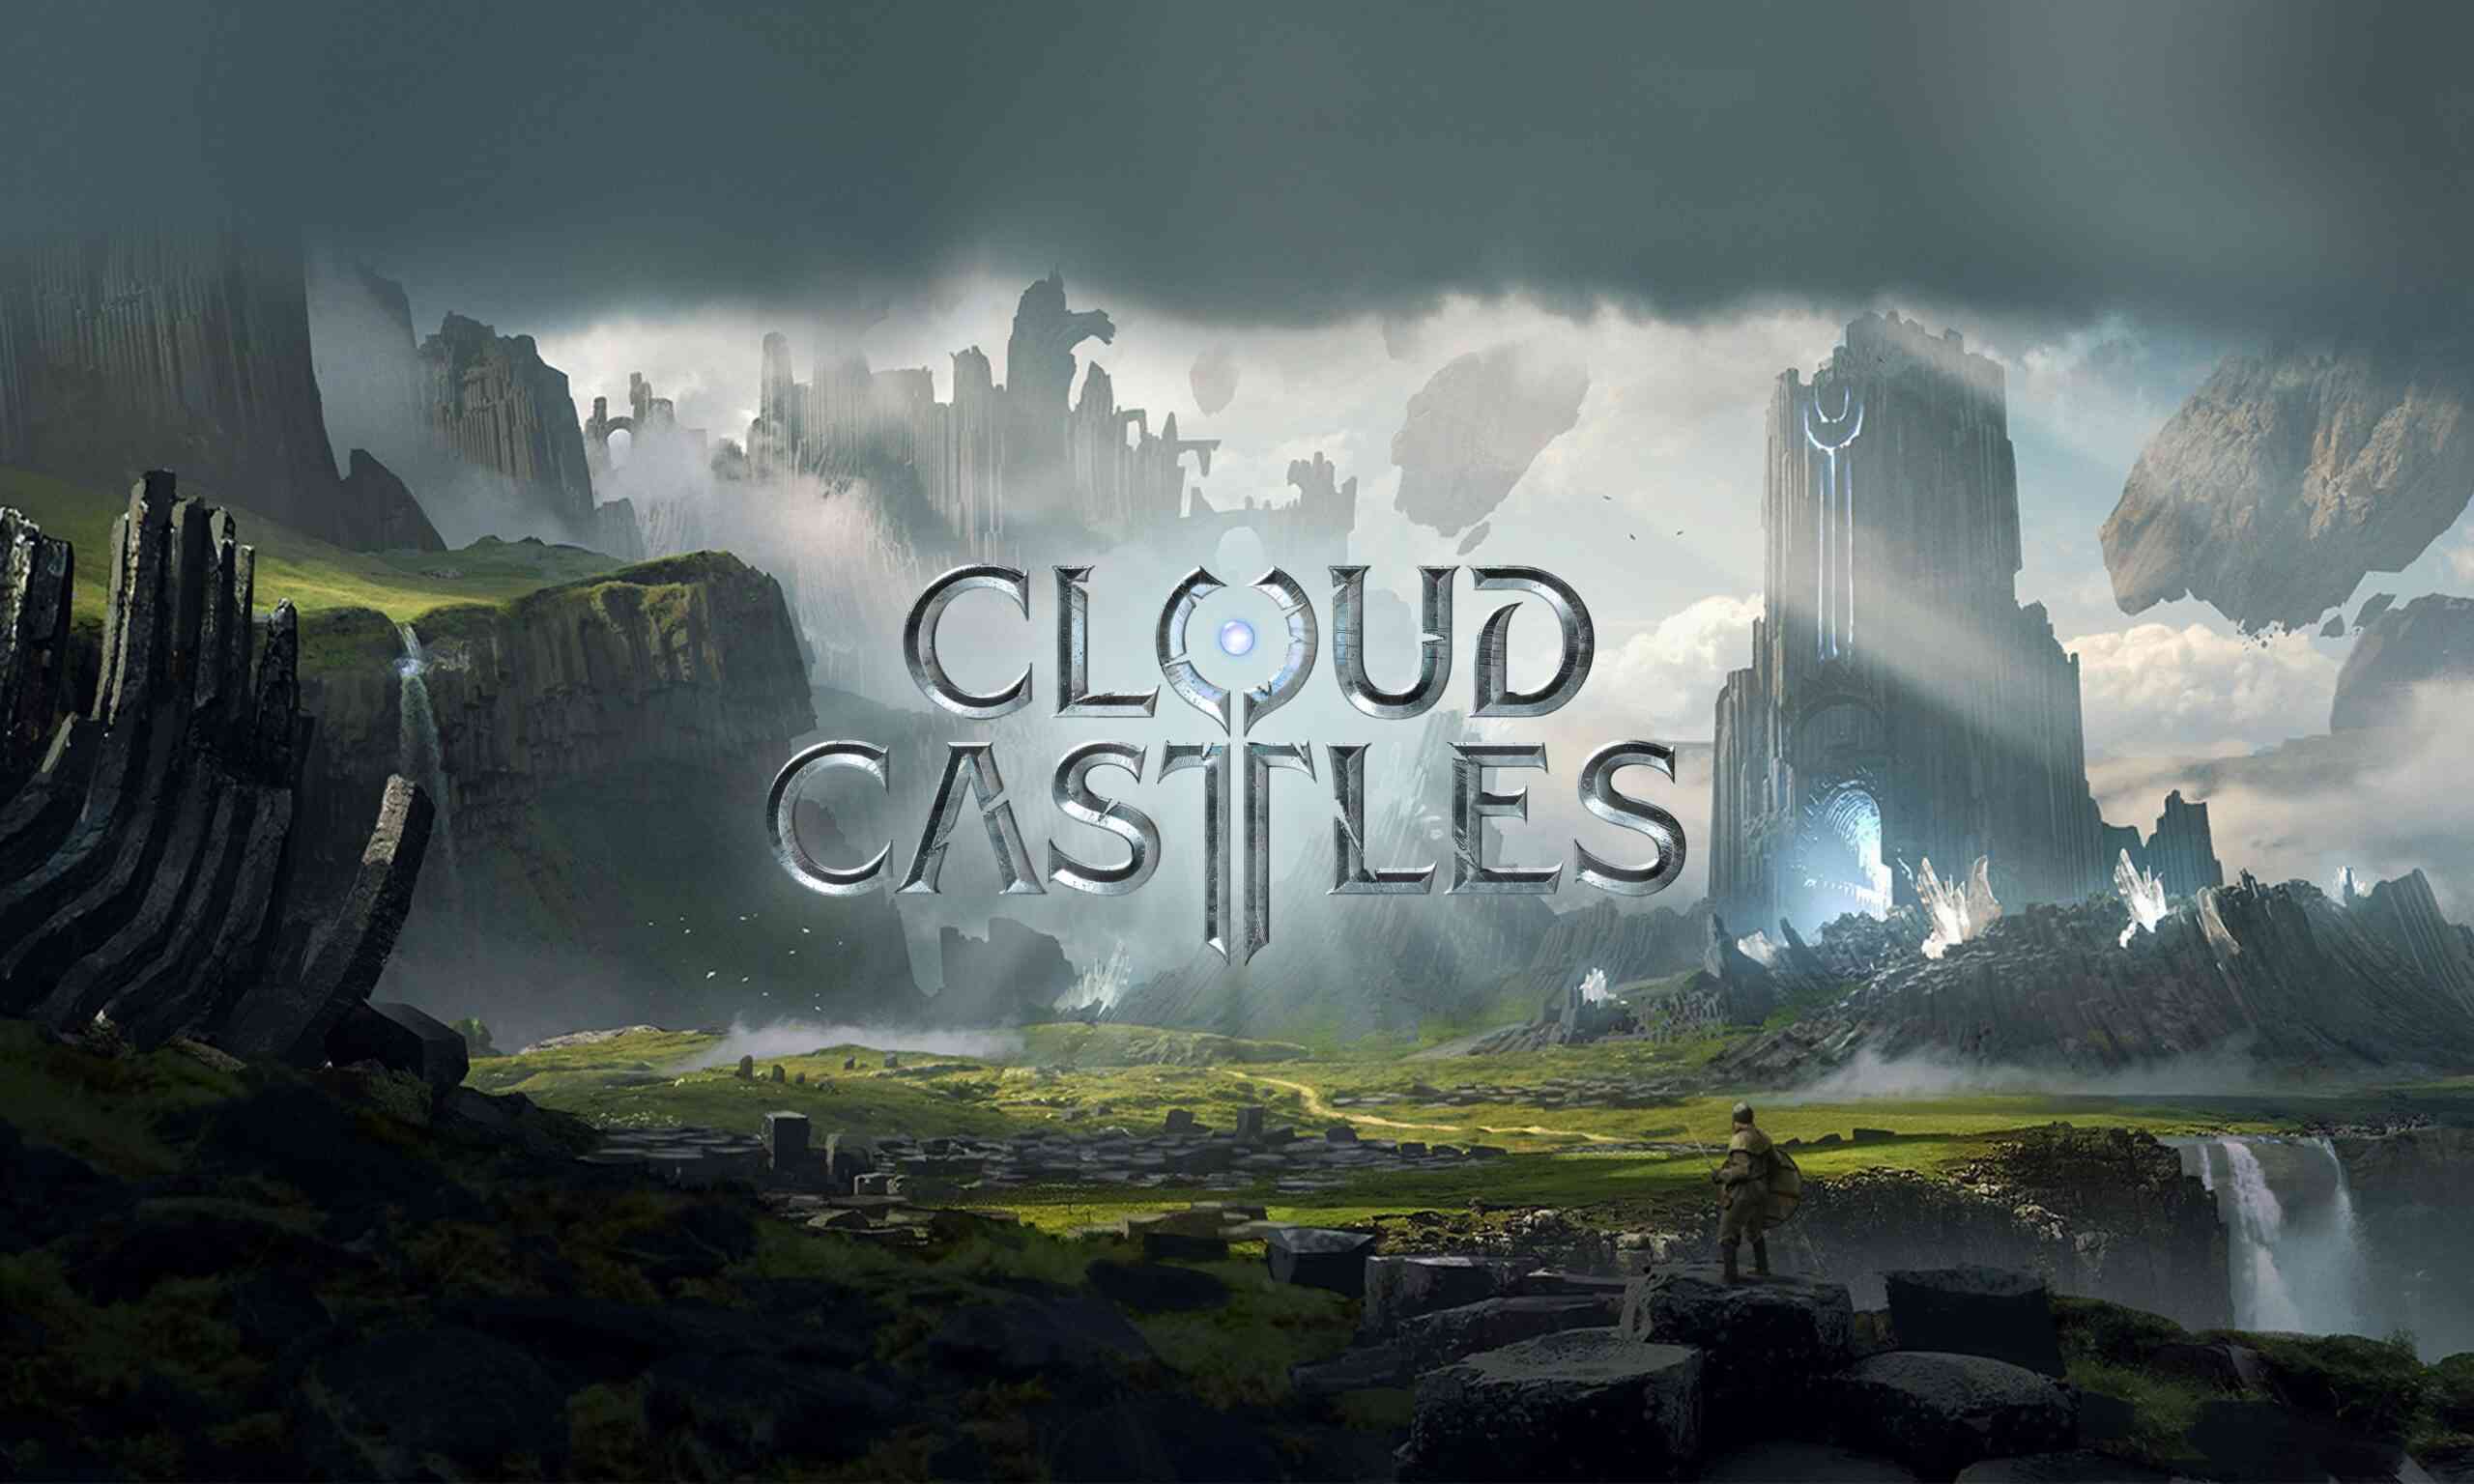 Cloud Castles - Action-Strategy Game, UE 5 & Web3 Blockchain